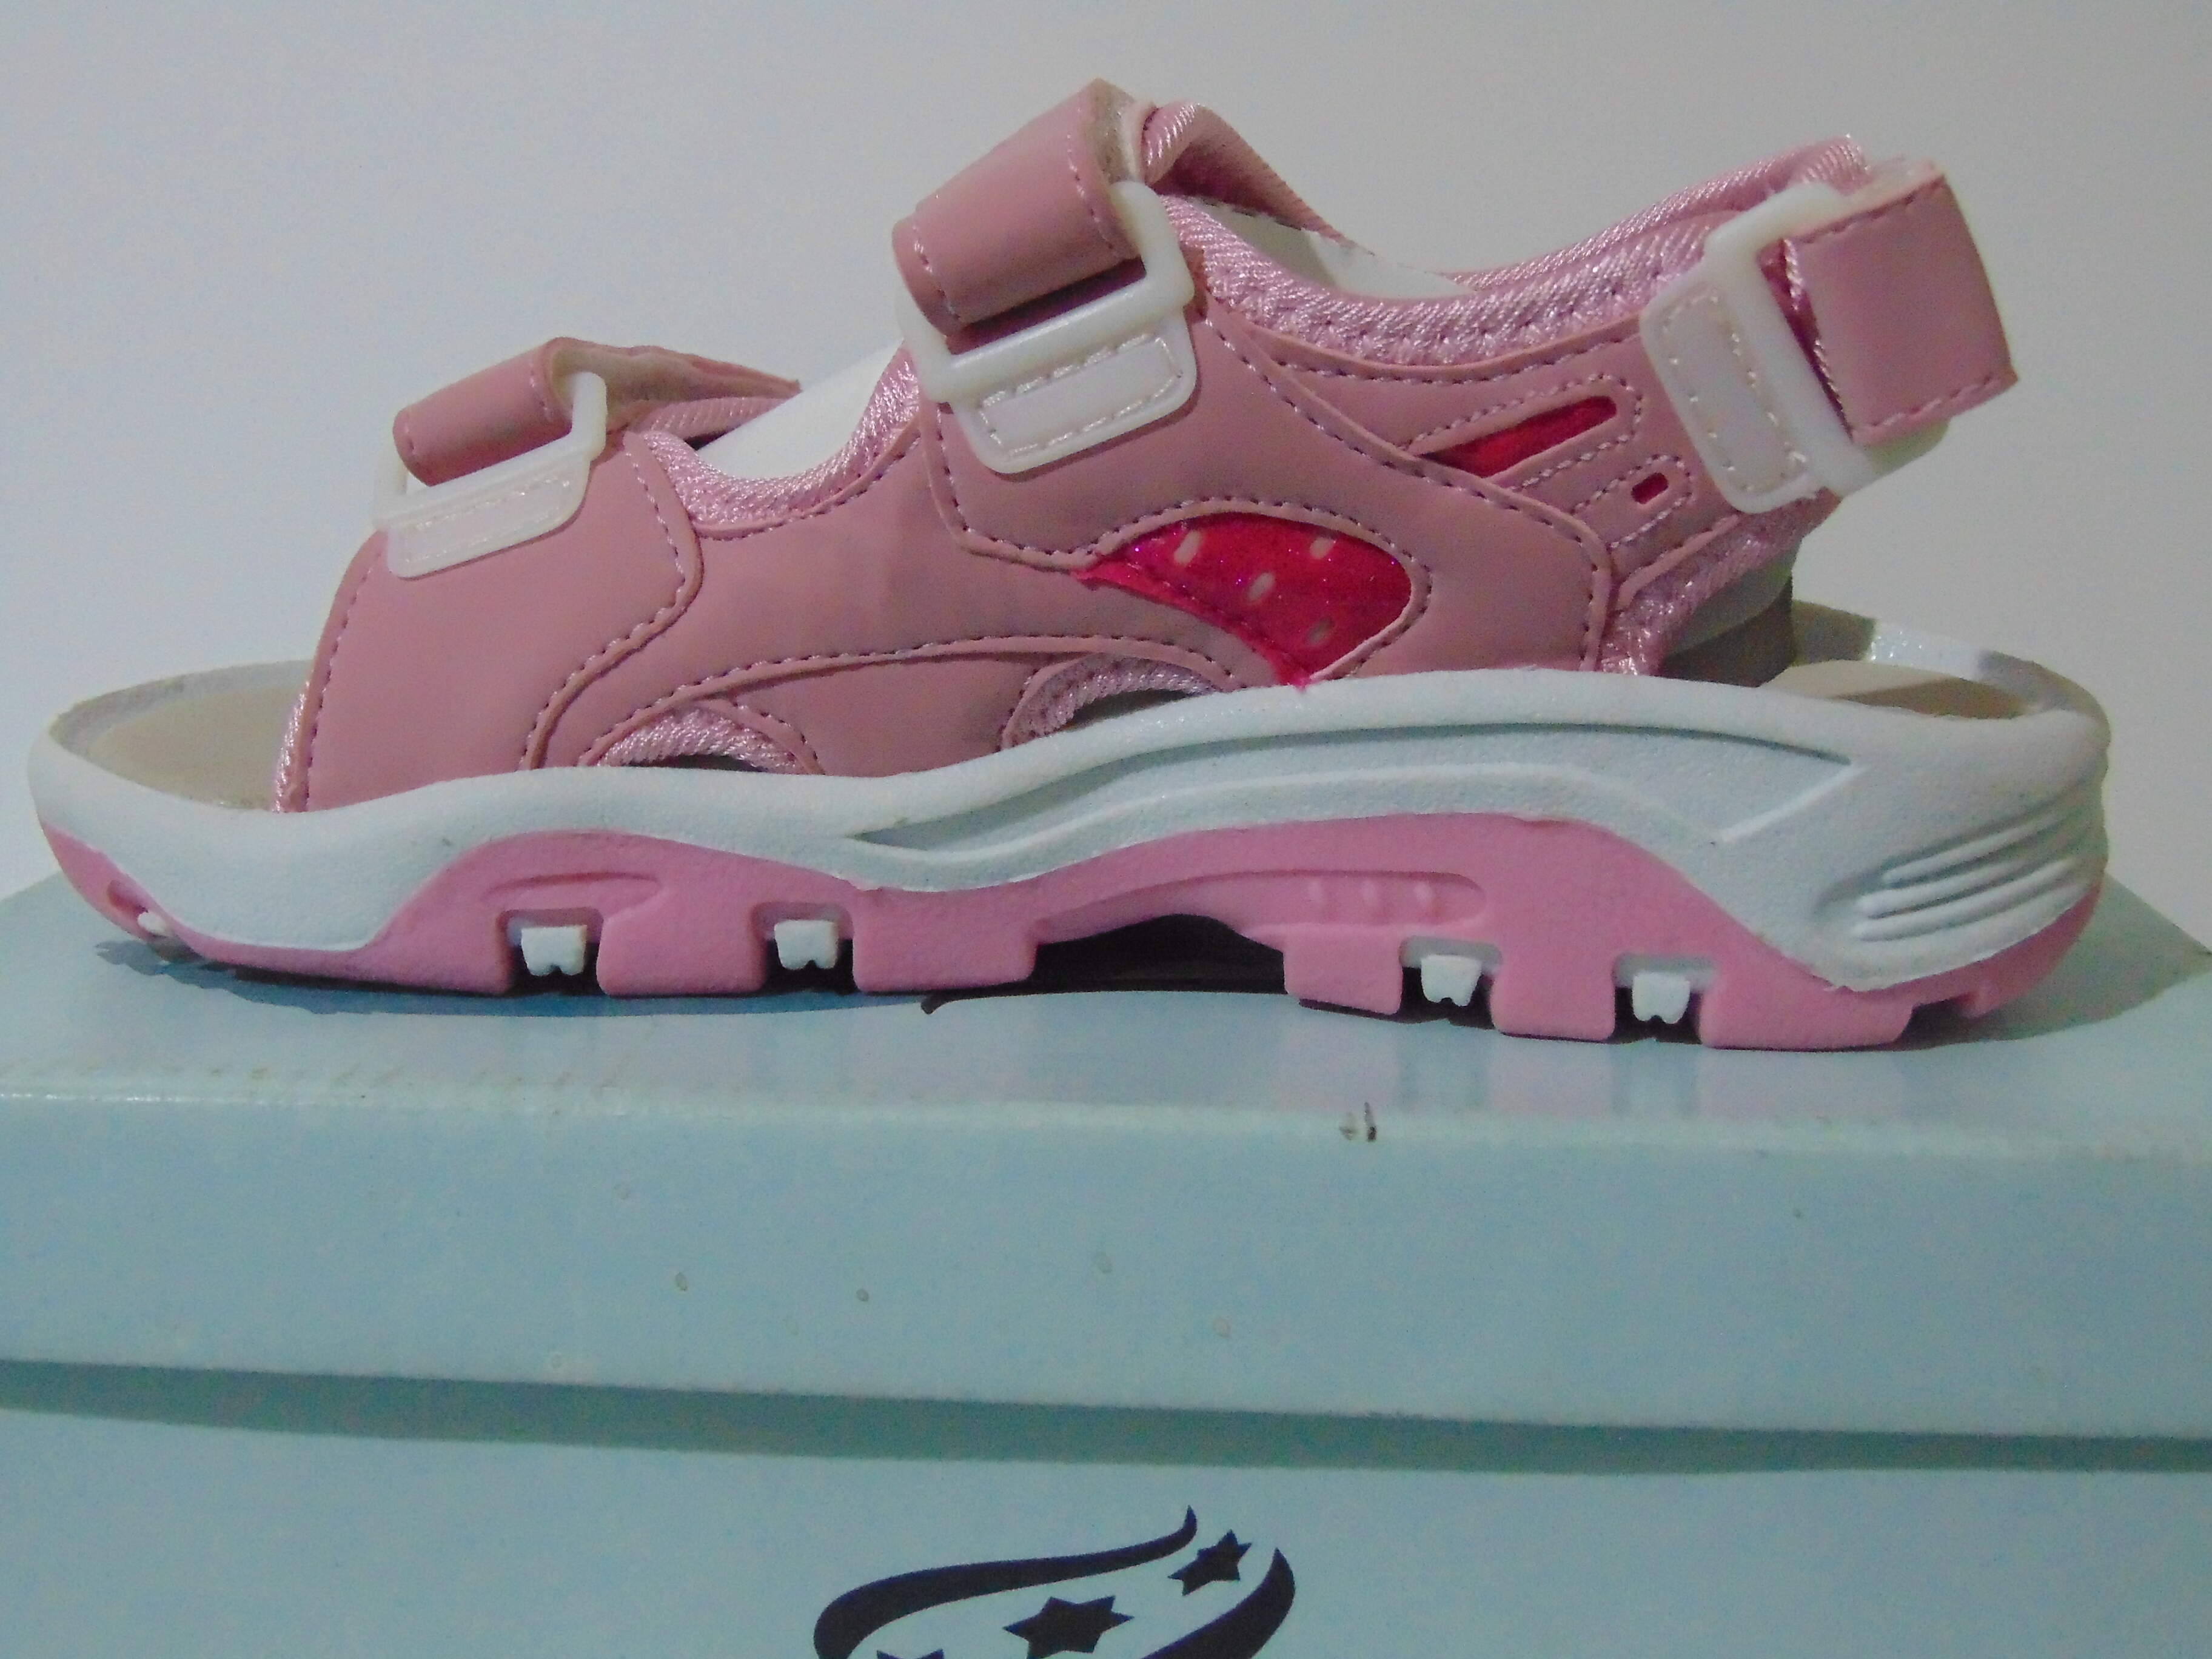 Rucanor Girls Summer Sandals Outdoor Footwear Light pink Colour  22062-01